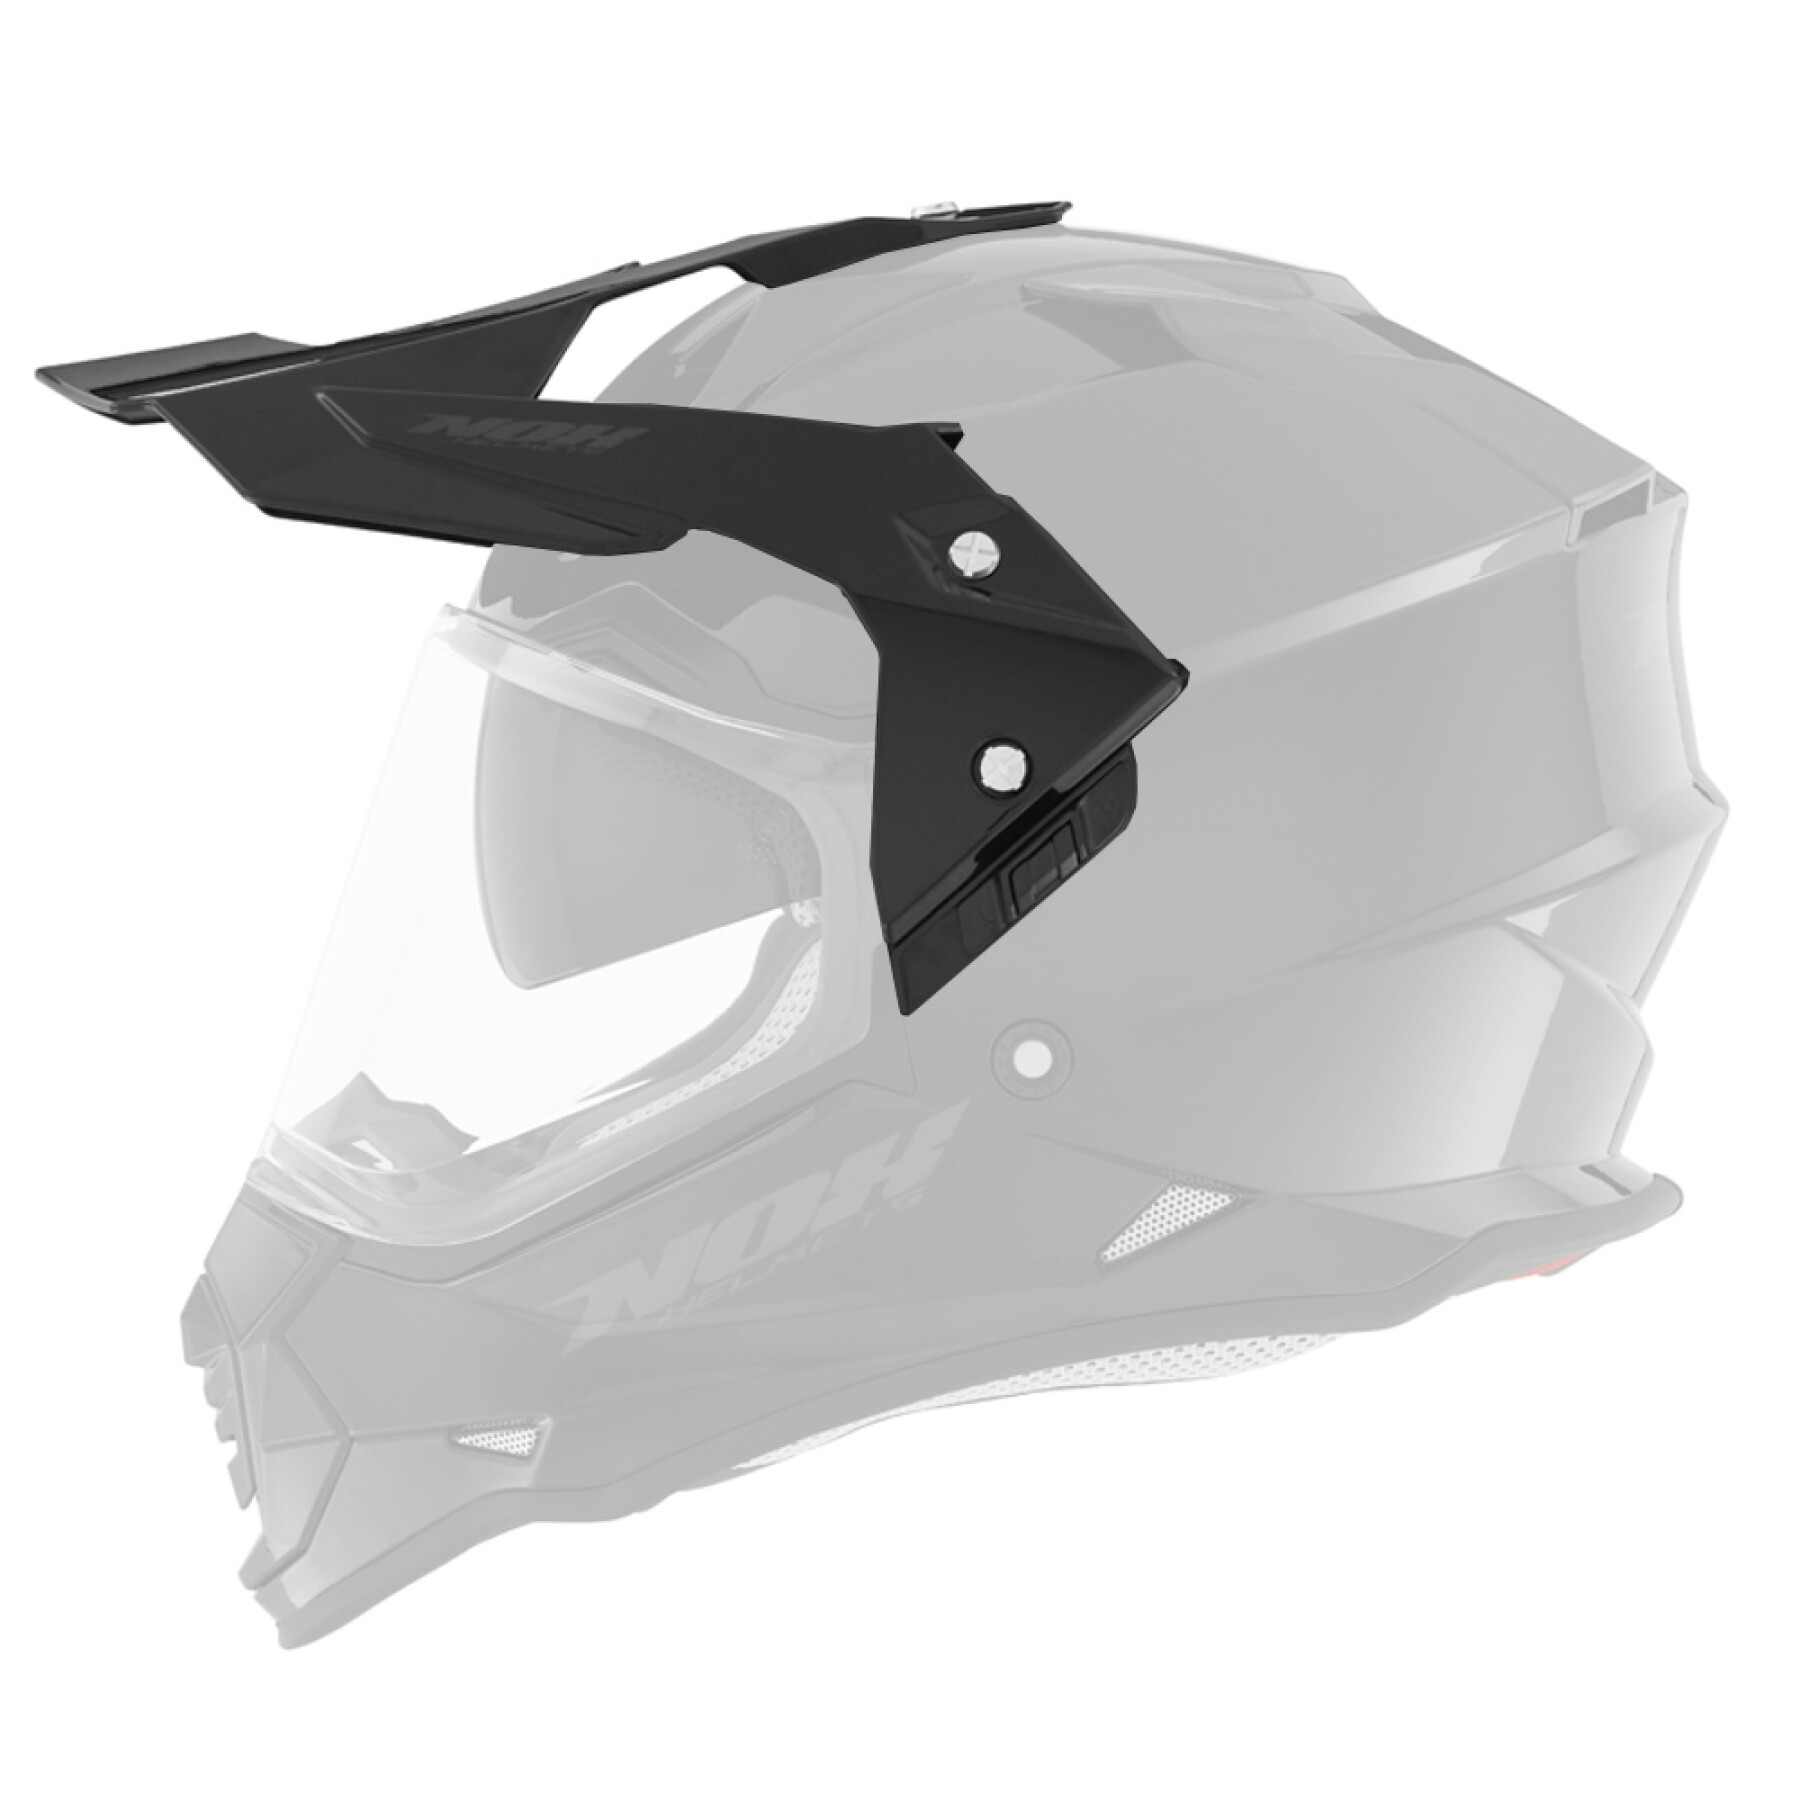 Viseira para capacete de motocross Nox 312